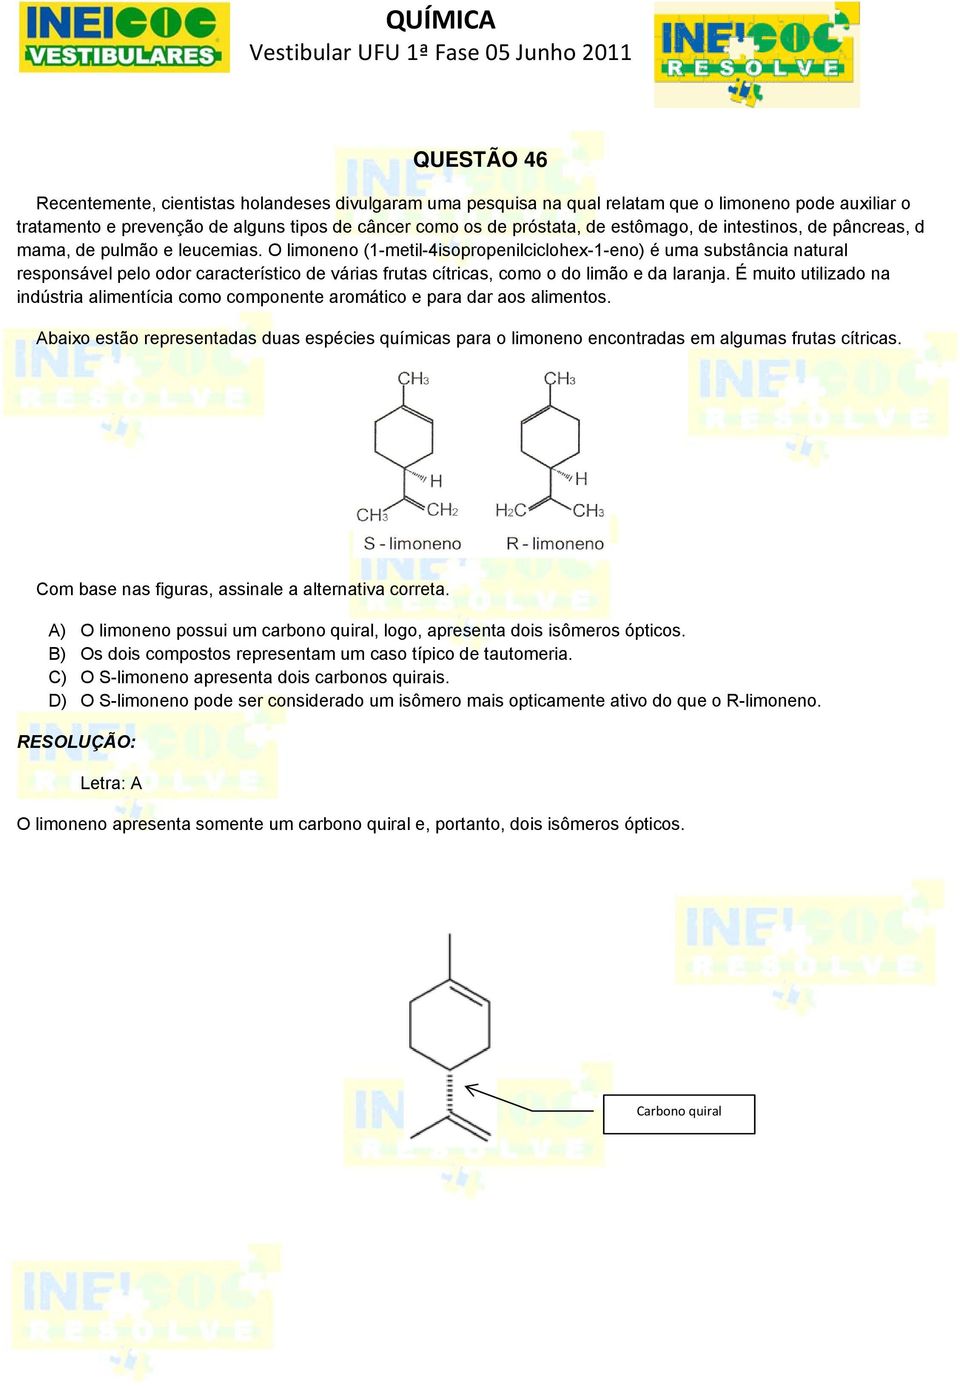 O limoneno (1-metil-4isopropenilciclohex-1-eno) é uma substância natural responsável pelo odor característico de várias frutas cítricas, como o do limão e da laranja.